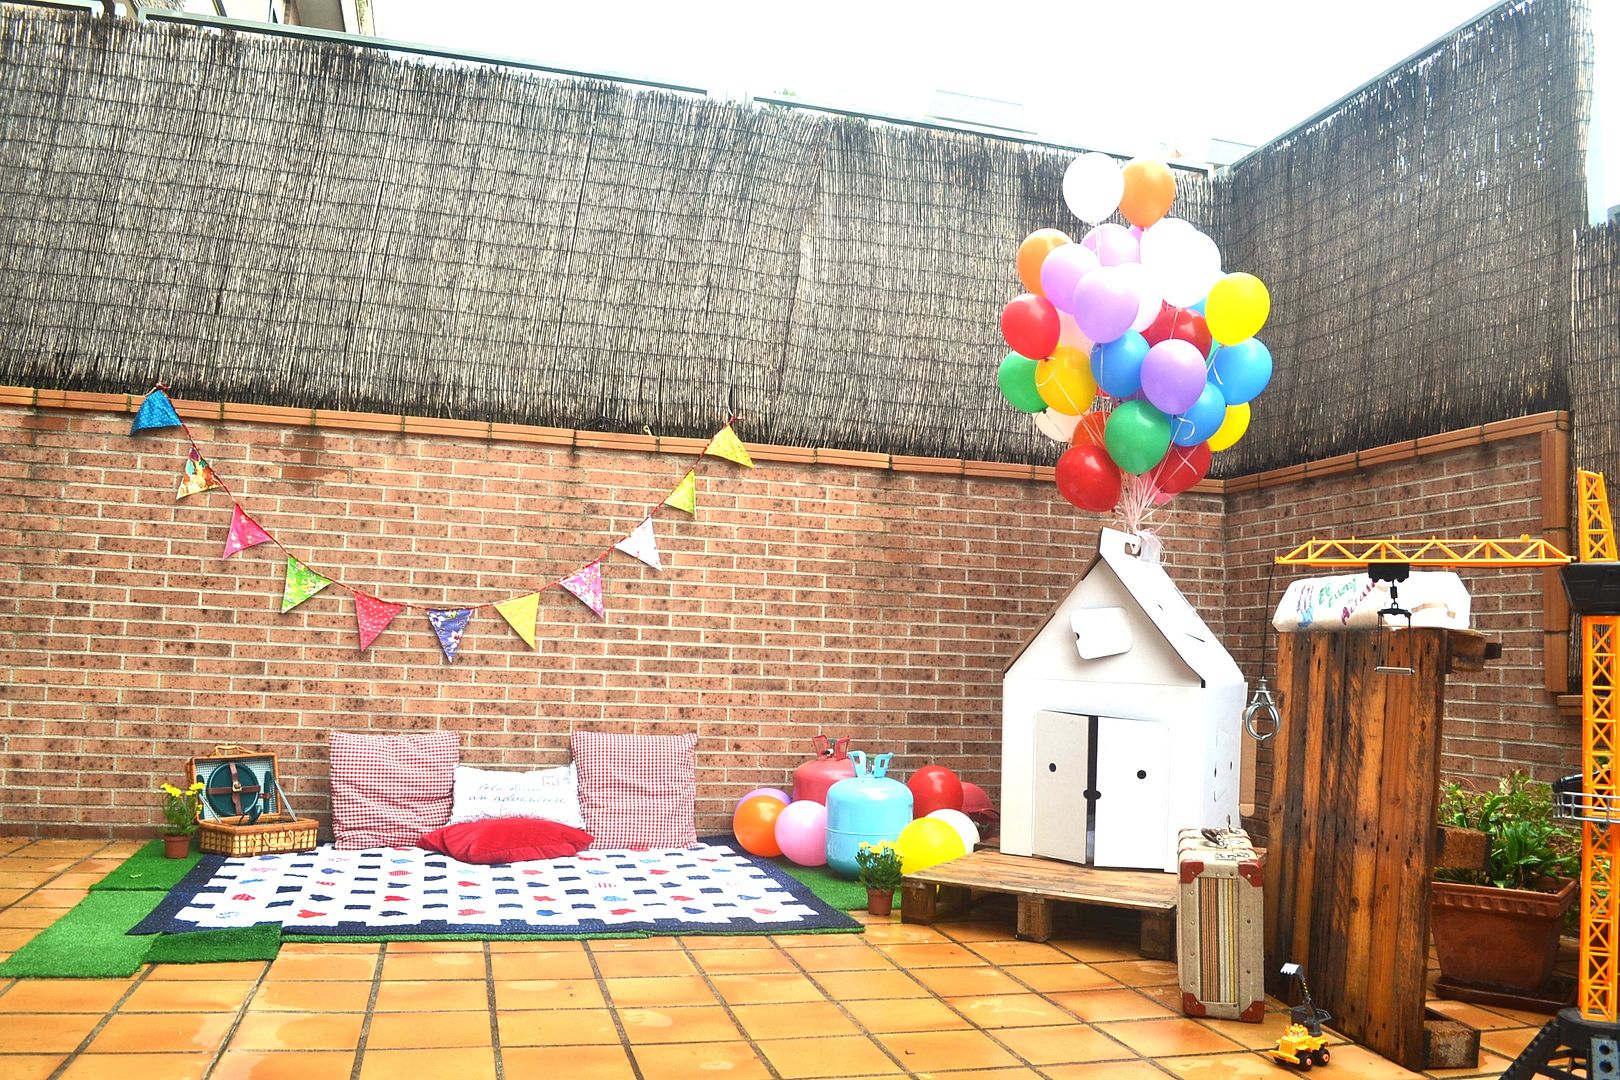  cumpleaños fiesta up con casita y globos